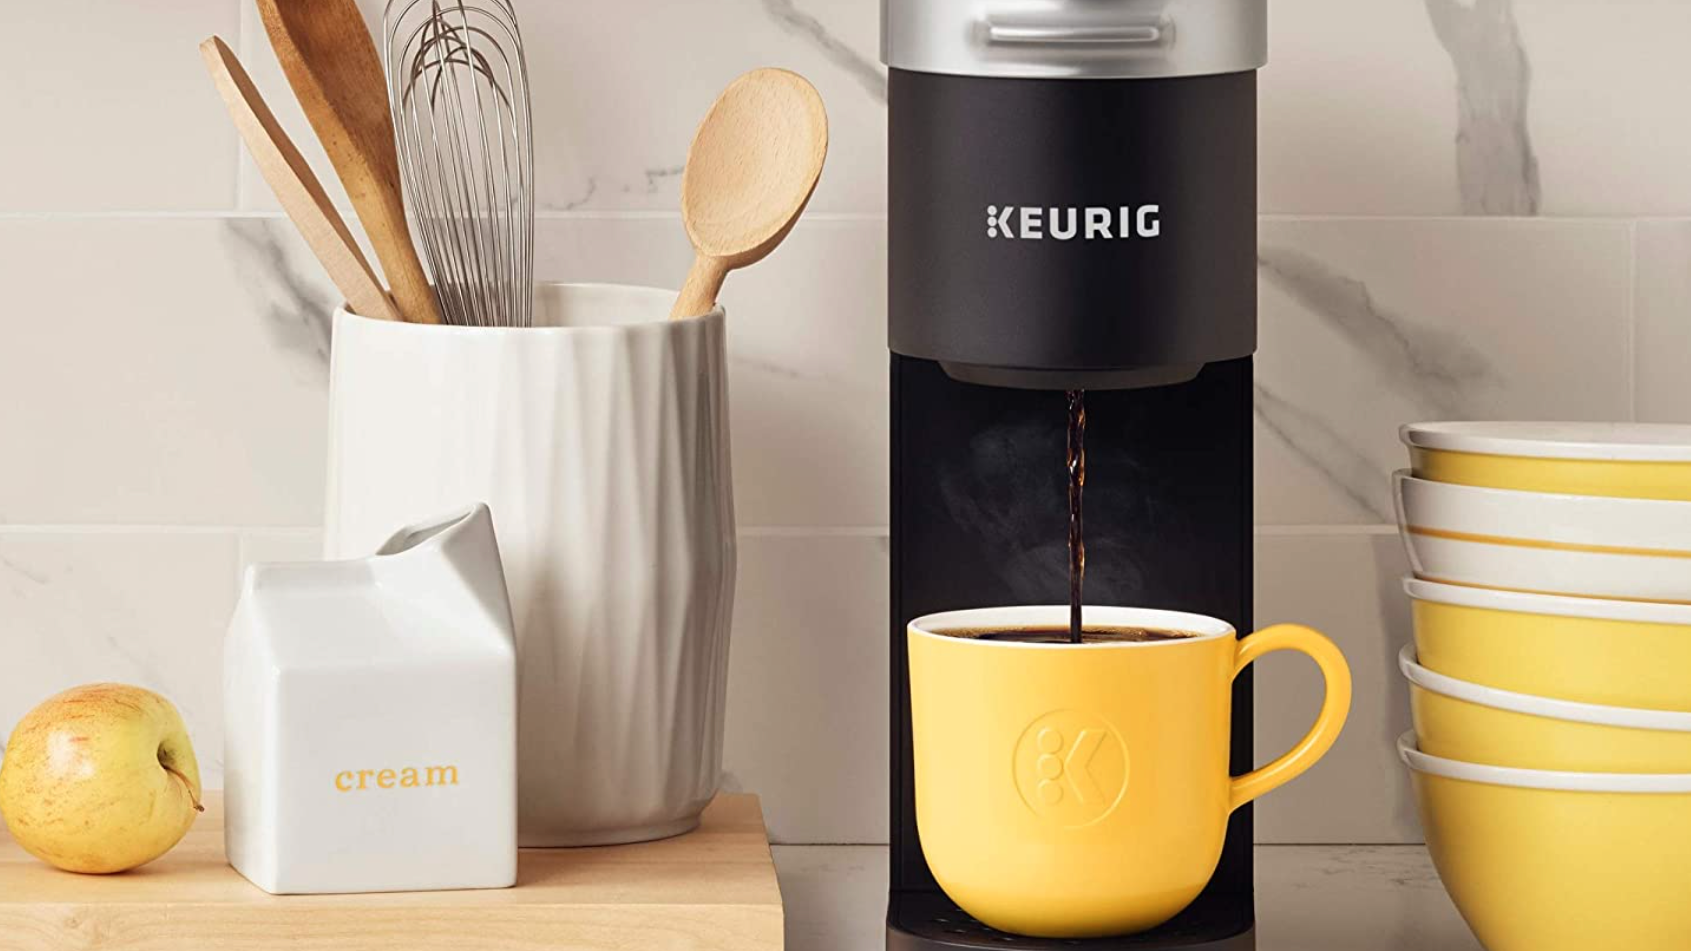 Keurig Mini single-cup coffee maker